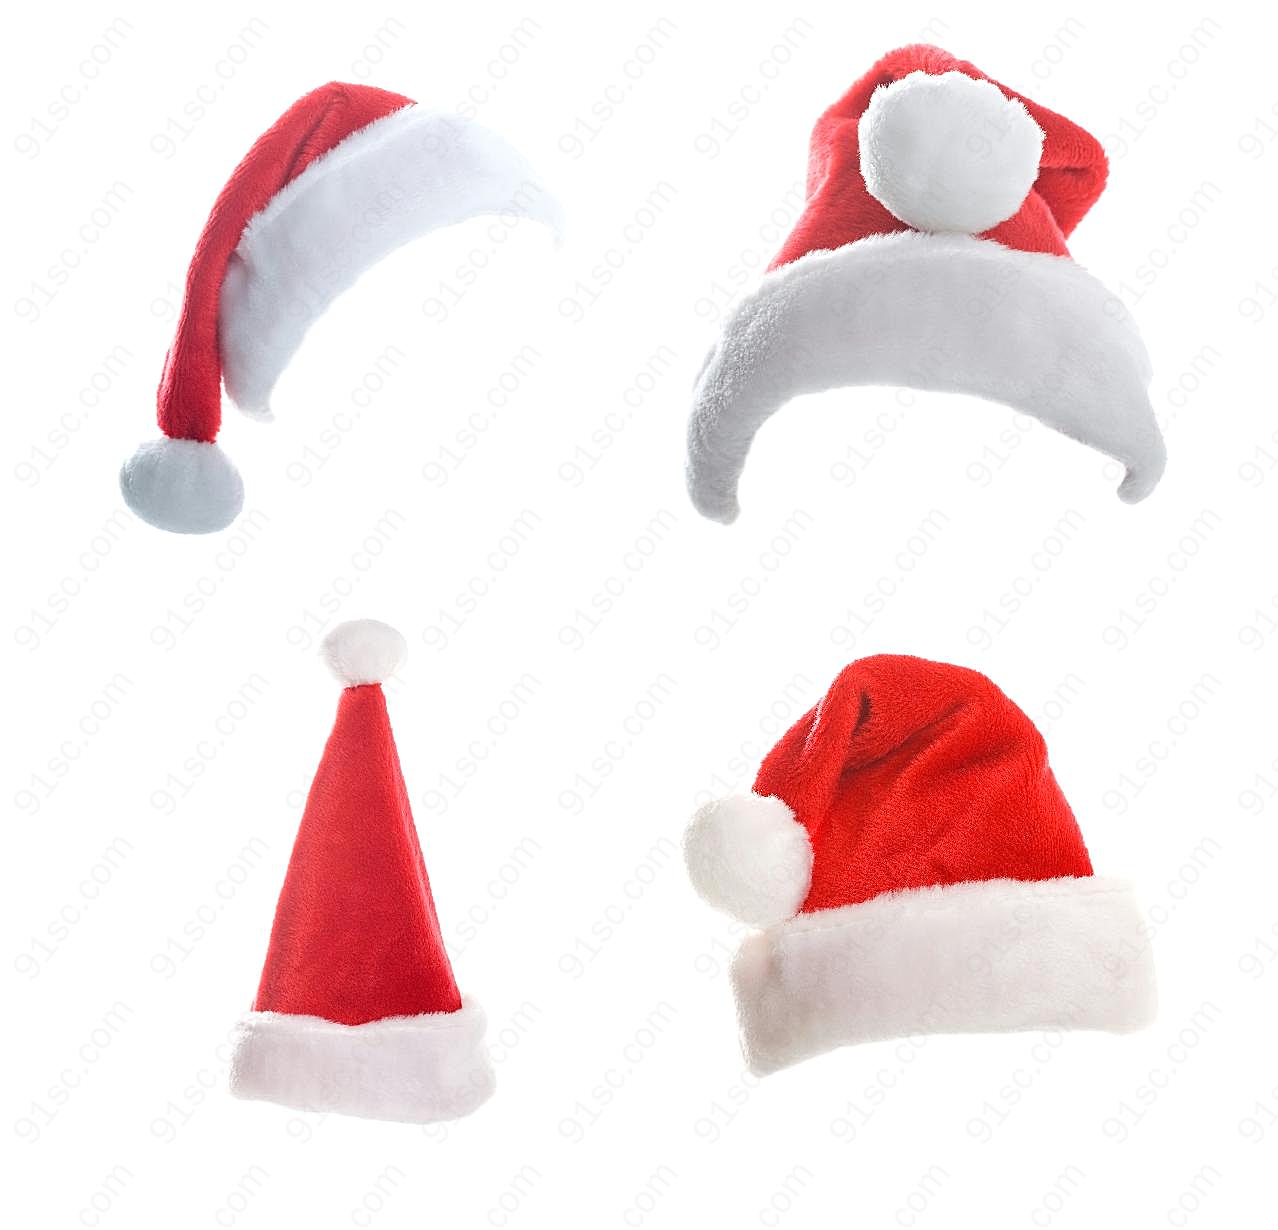 高清圣诞帽图片下载节日假日